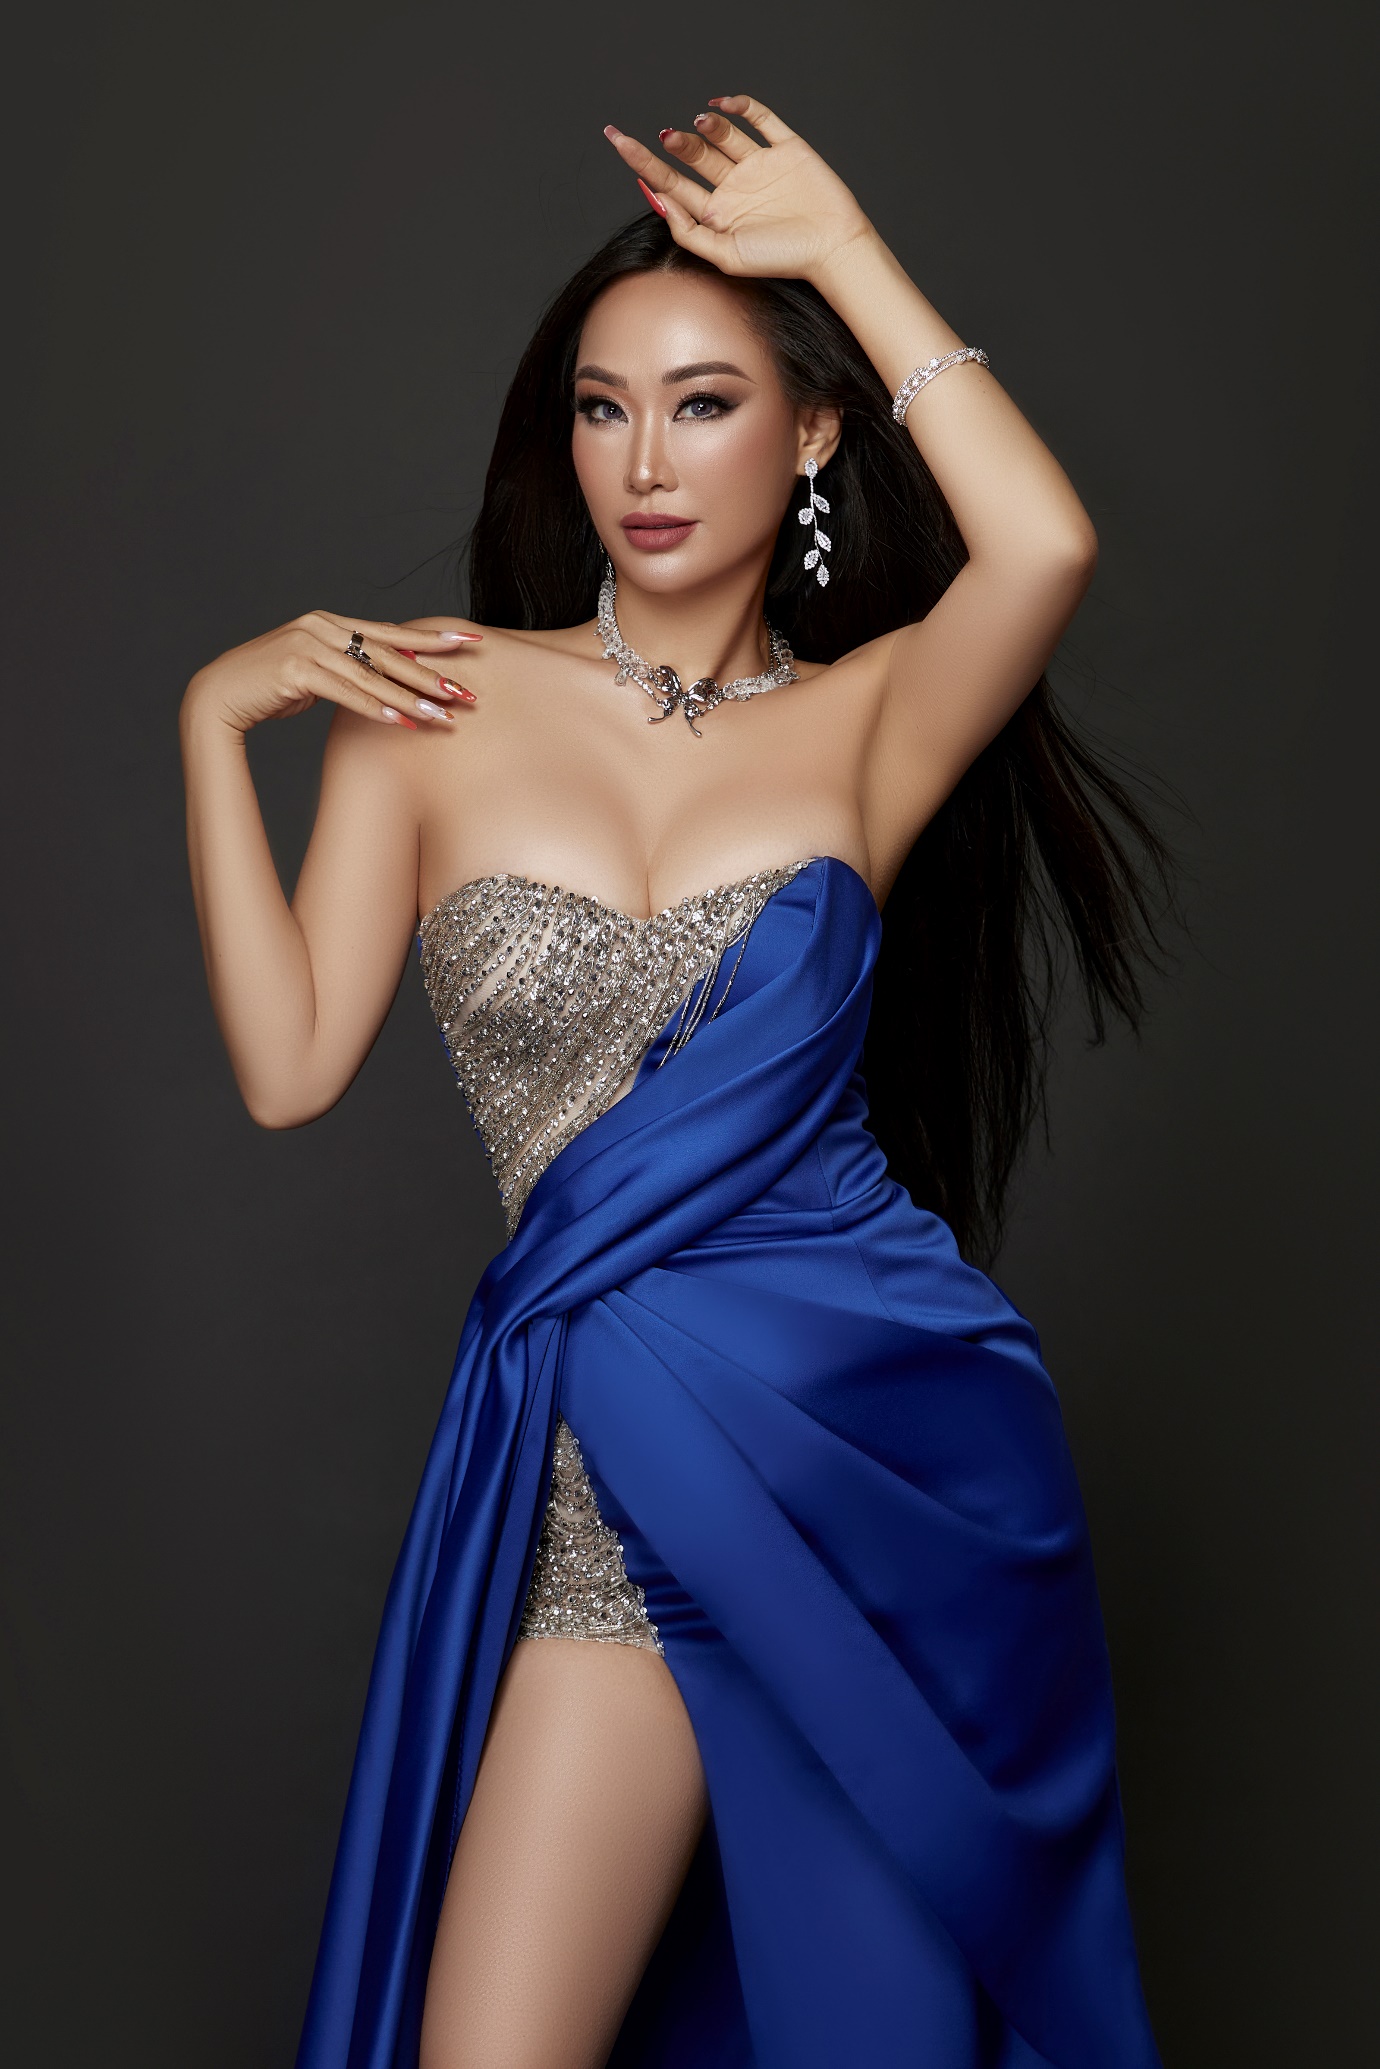 Hoa hậu Trang Lương mách nước cách chọn lựa trang phục cho các dịp lễ cuối năm - 6